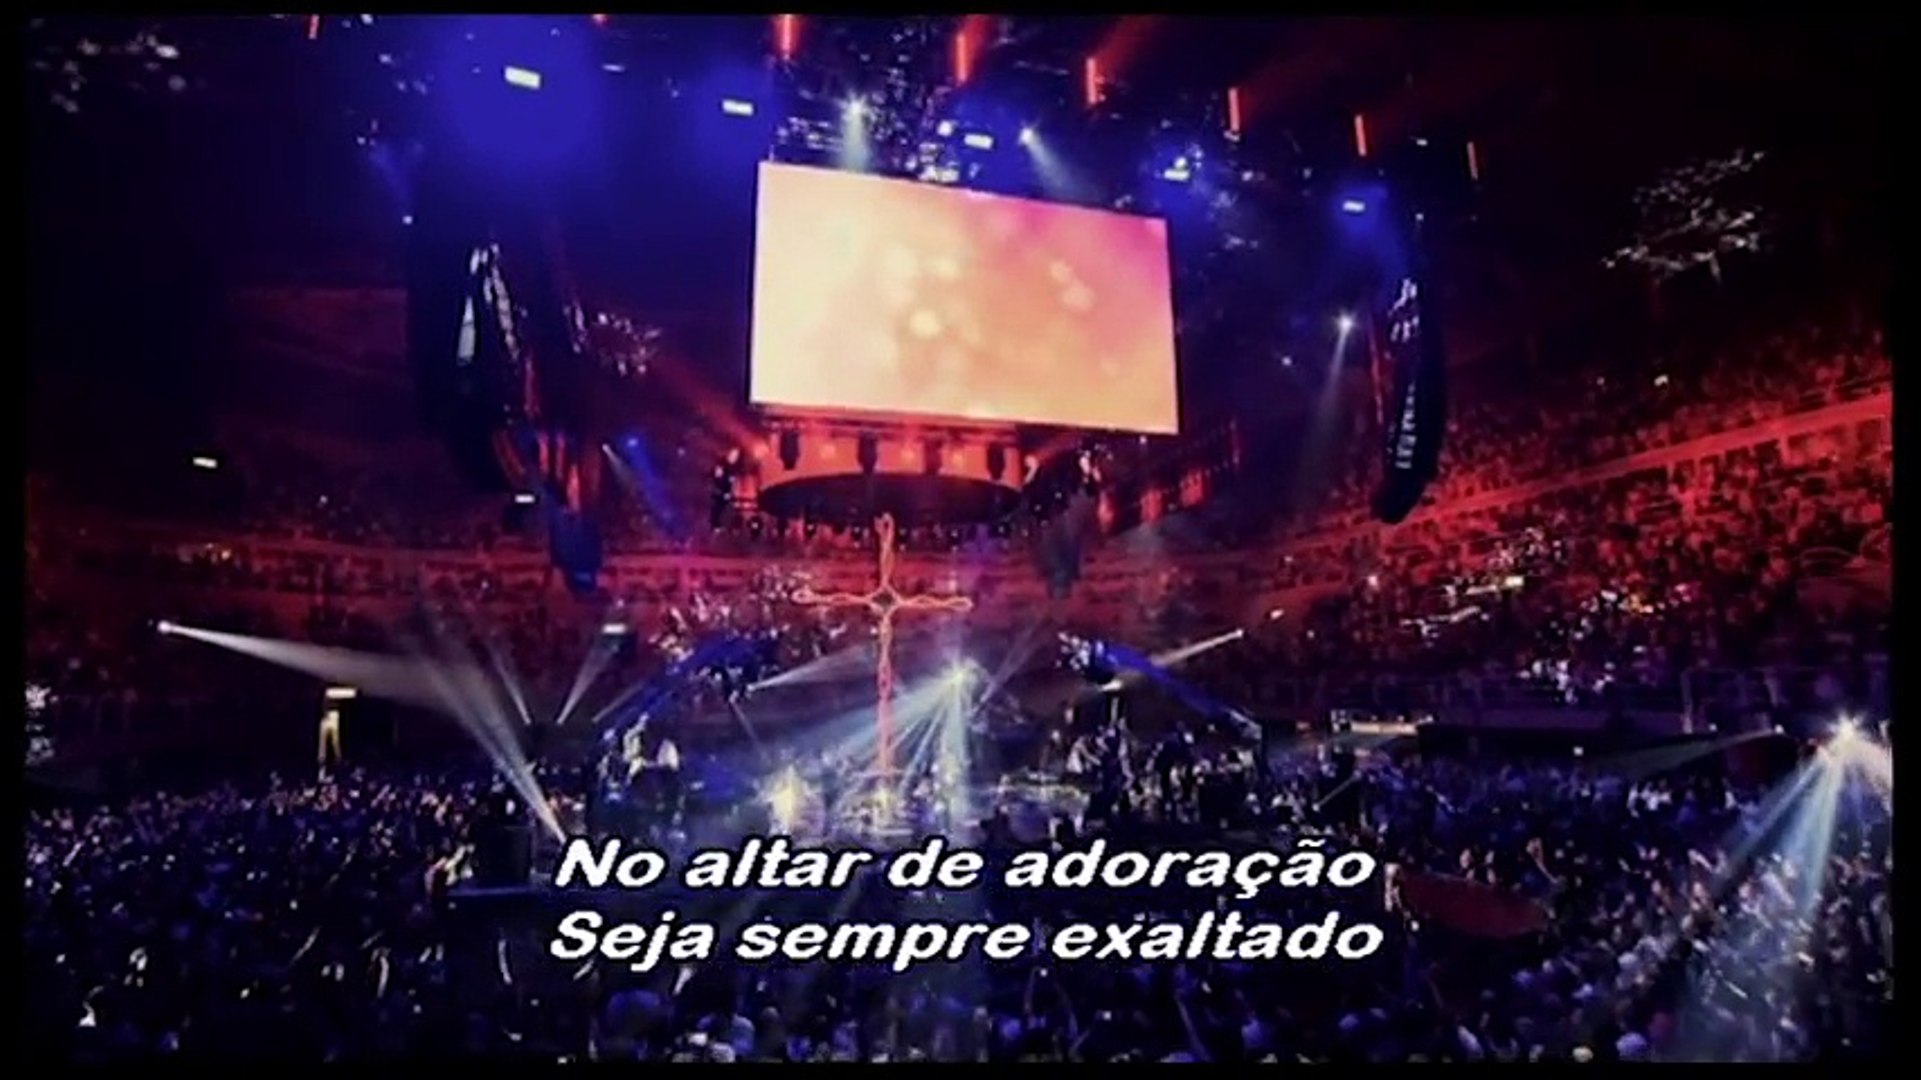 02 Infinitamente Mais - Fernandinho Ao Vivo - HSBC Arena RJ 